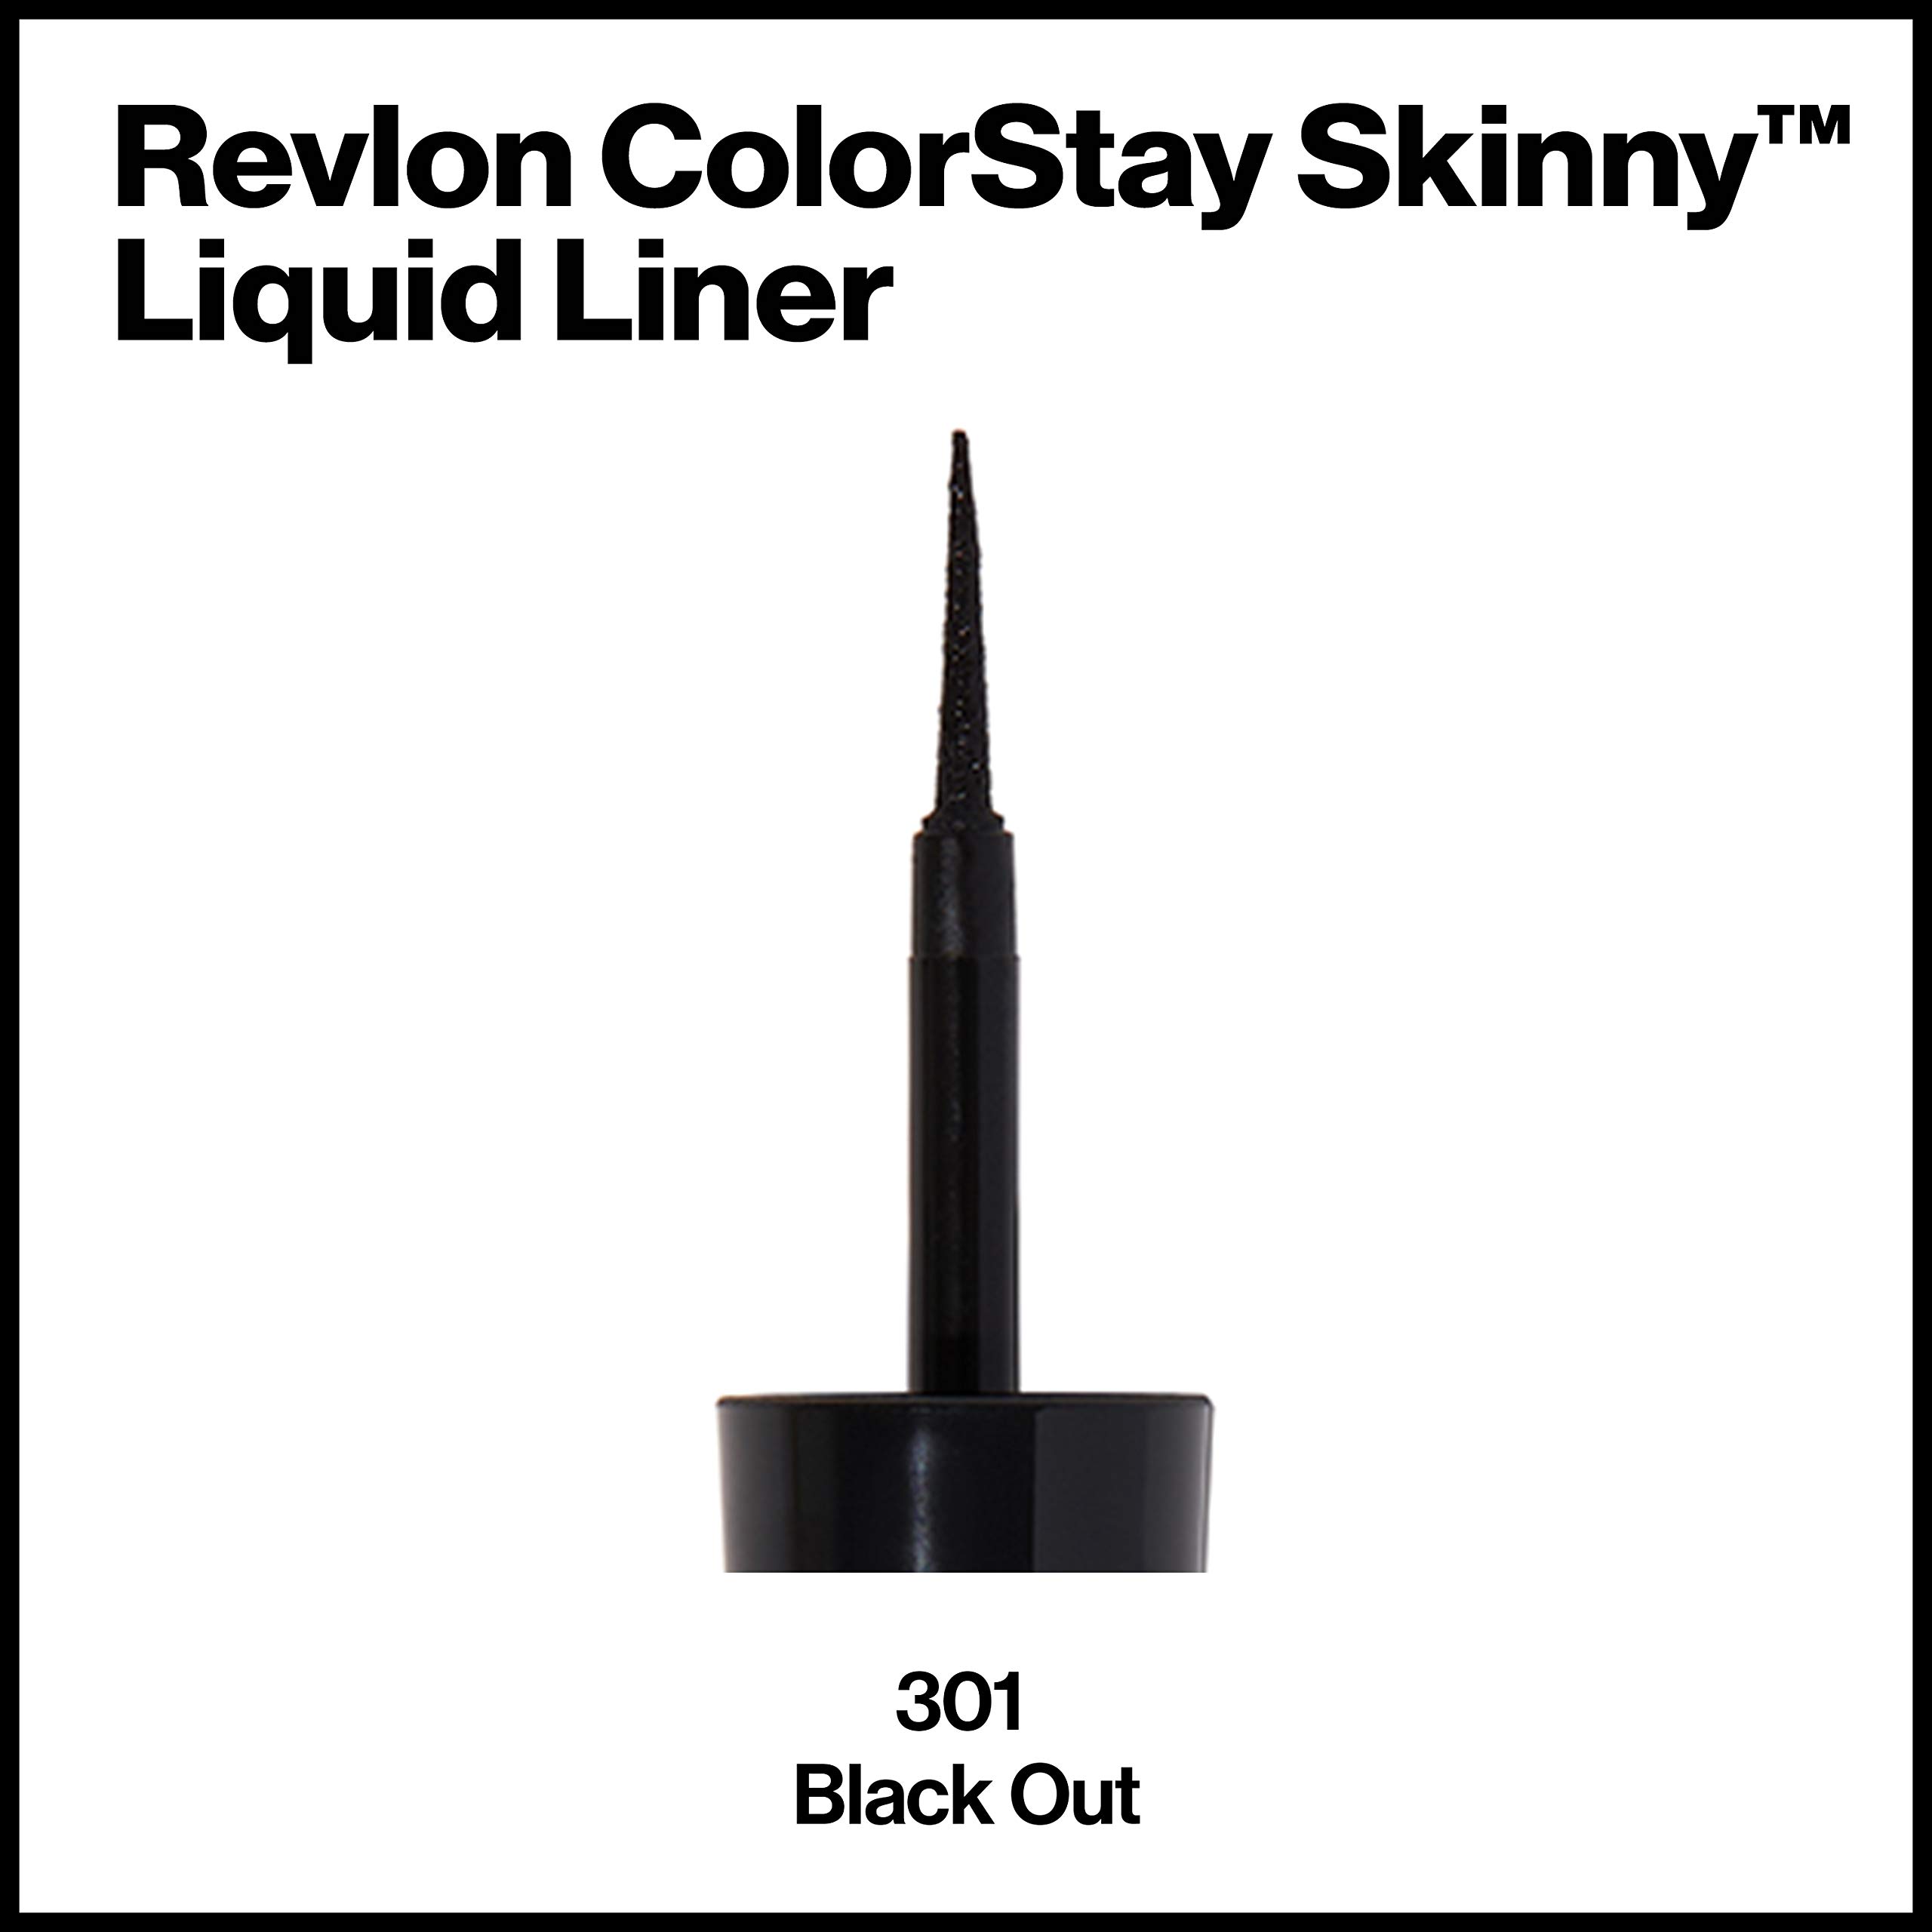 Revlon Skinny Liquid Eyeliner, ColorStay Eye Makeup, Waterproof, Smudgeproof, Longwearing with Ultra-Fine Tip, 301 Black Out, 0.08 Fl Oz (Pack of 1)